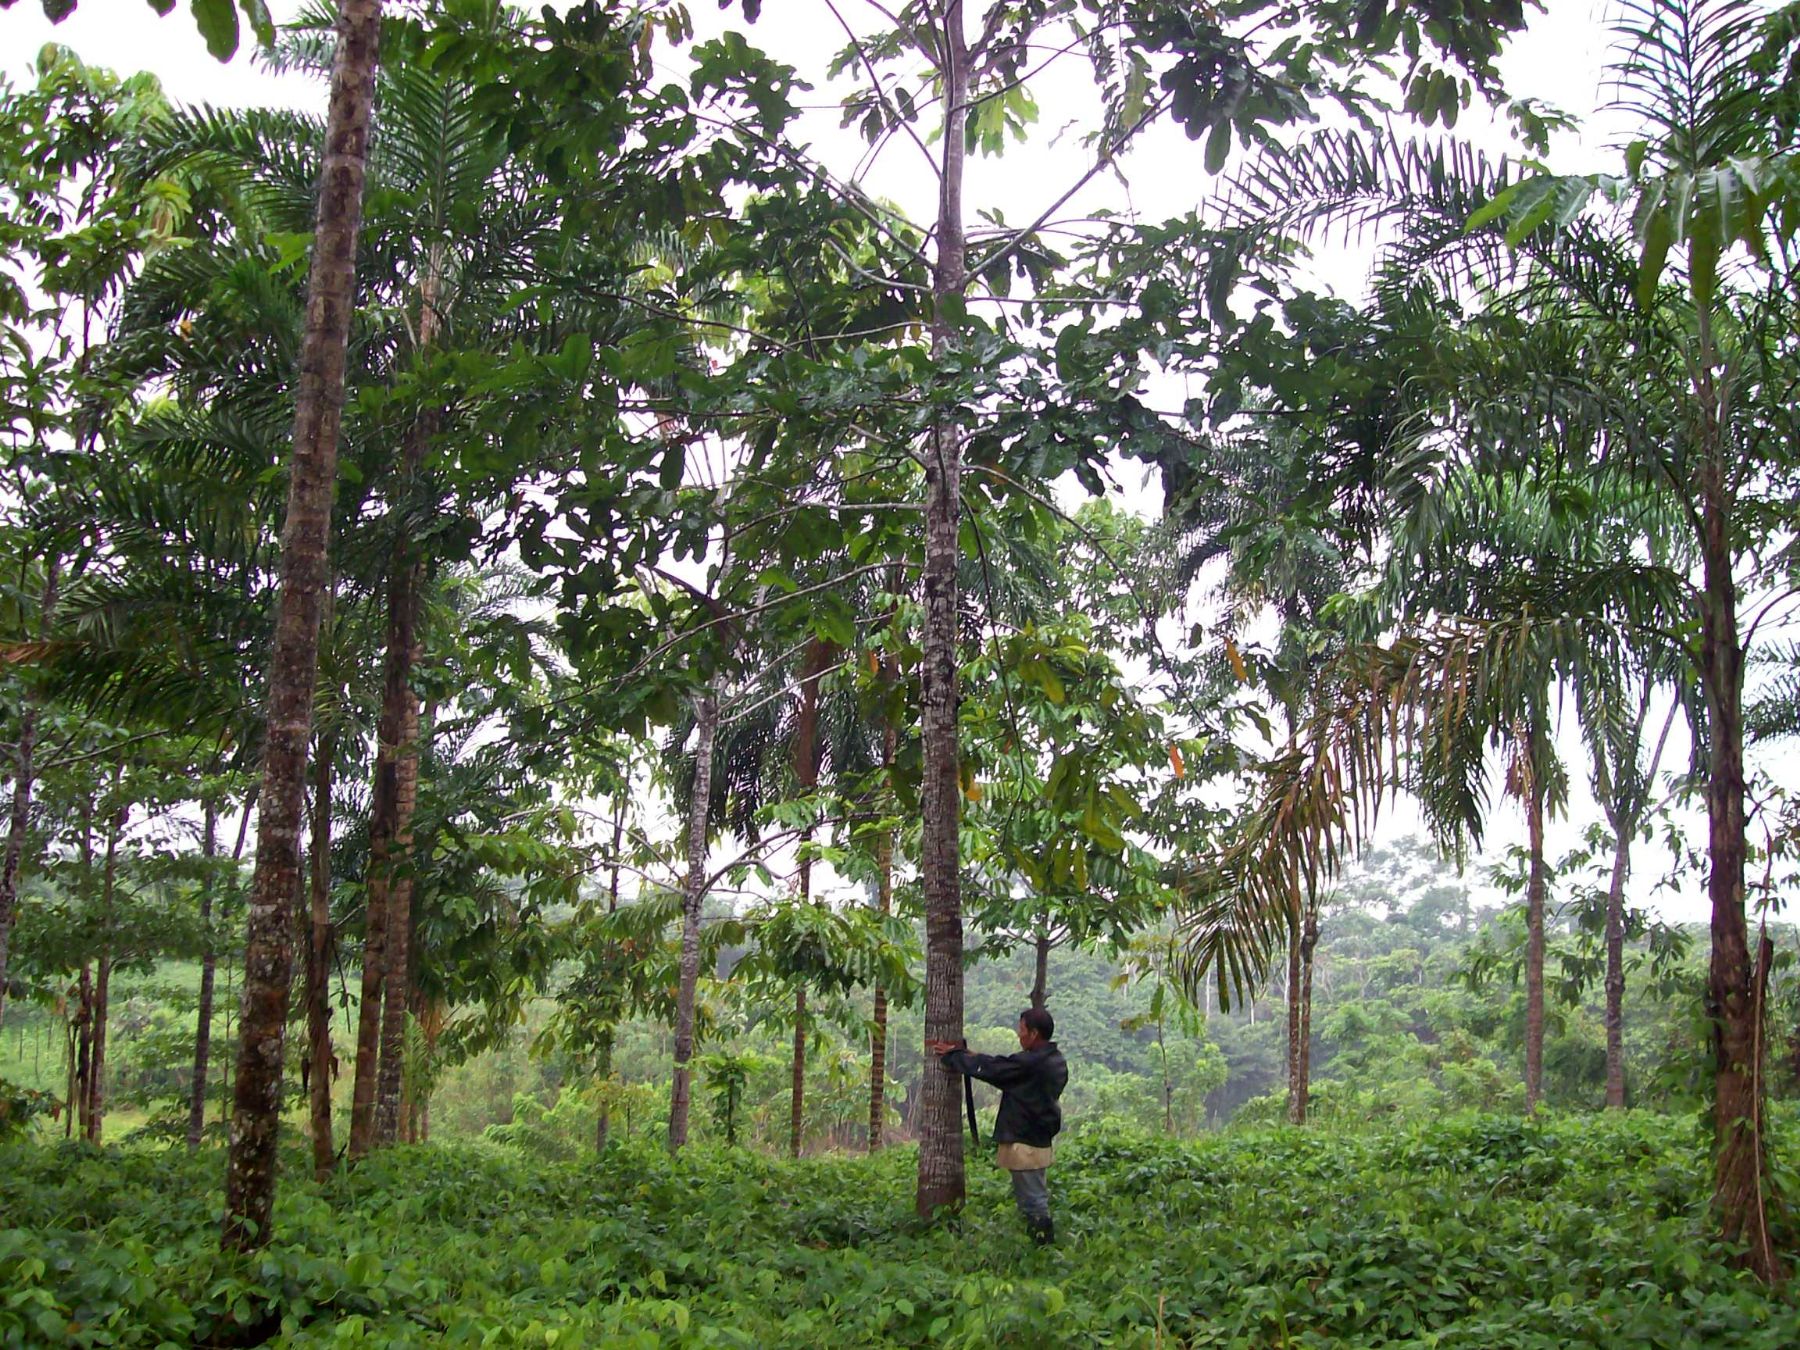 Con el préstamo se busca implementar una autoridad forestal “eficiente y competitiva”, que permita la conservación de la Amazonía.